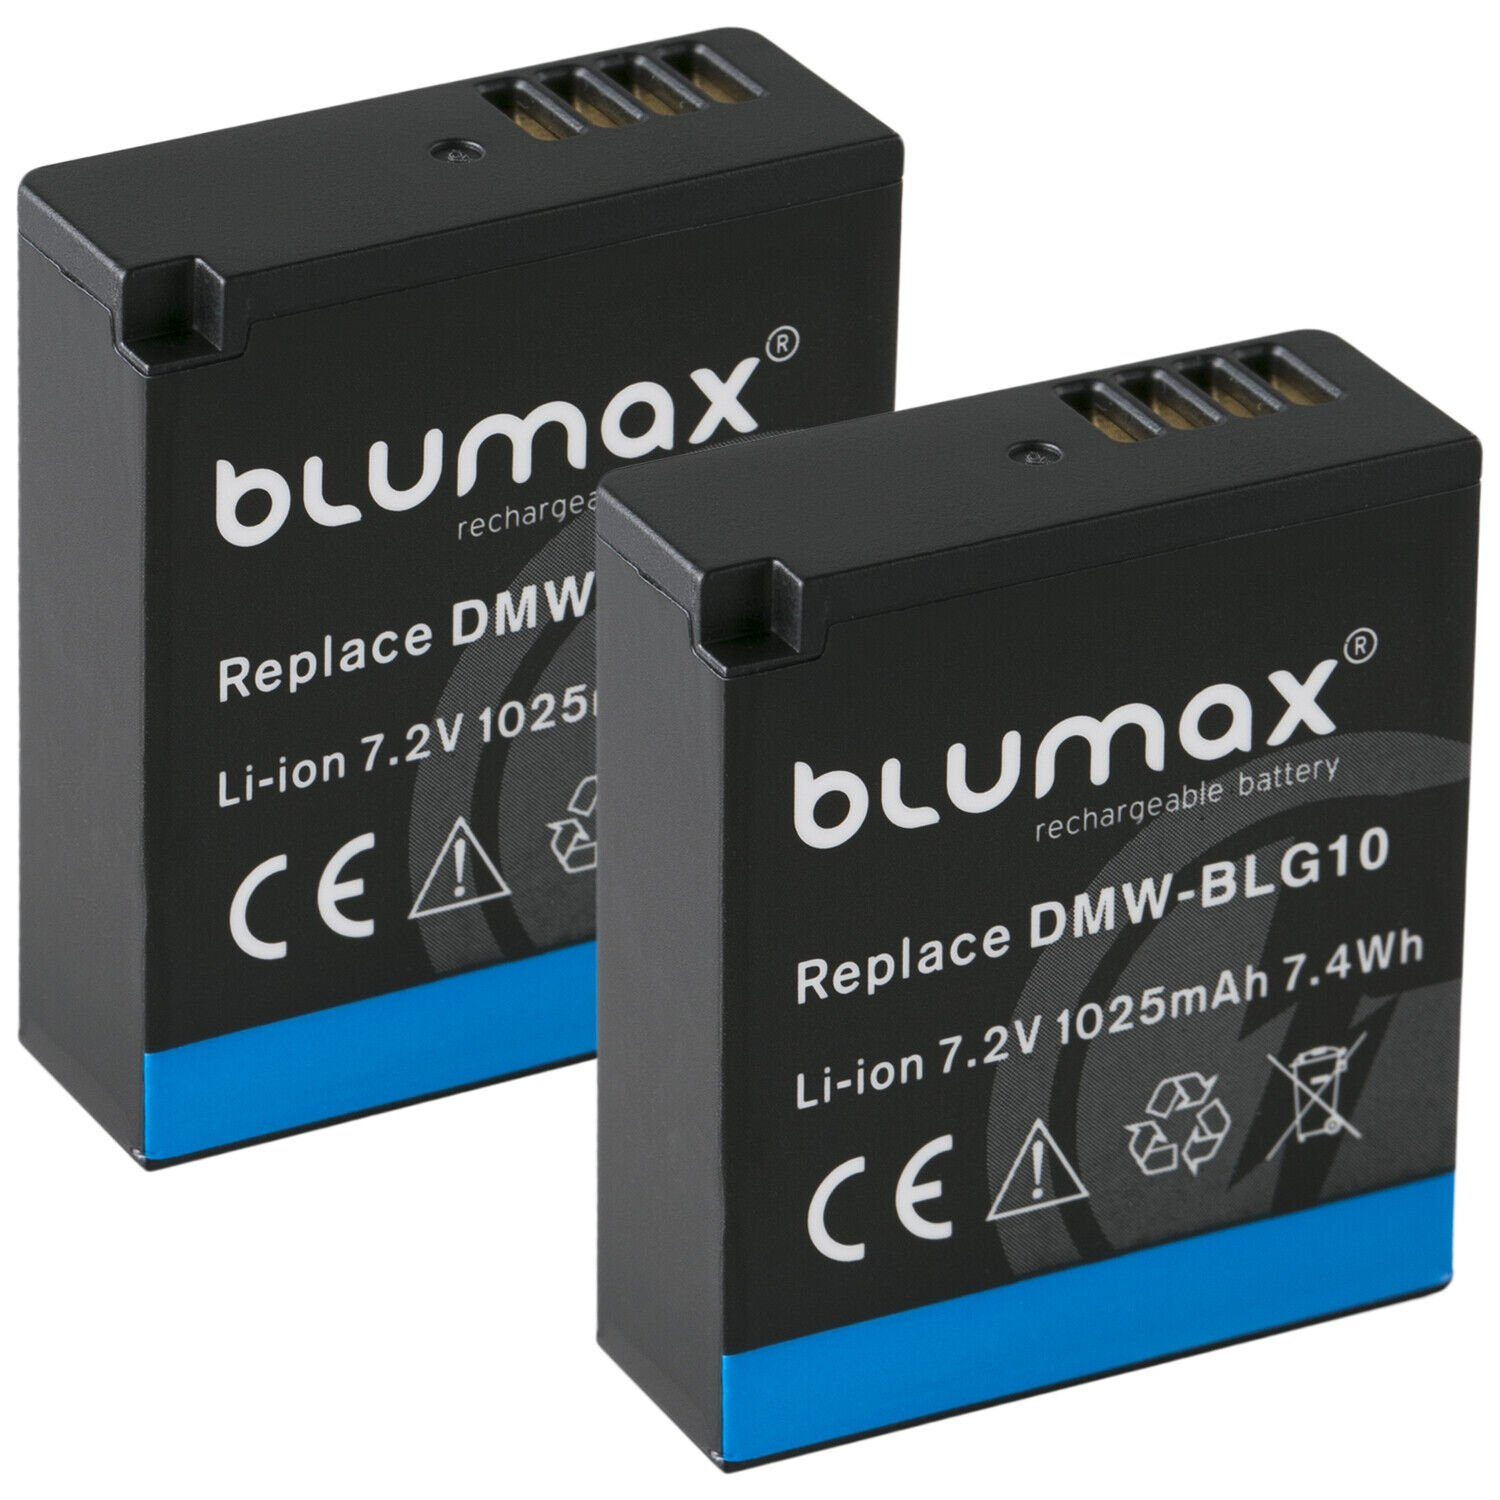 Blumax Set mit Lader 1025 DMW-BLG10 Kamera-Akku Panasonic für mAh